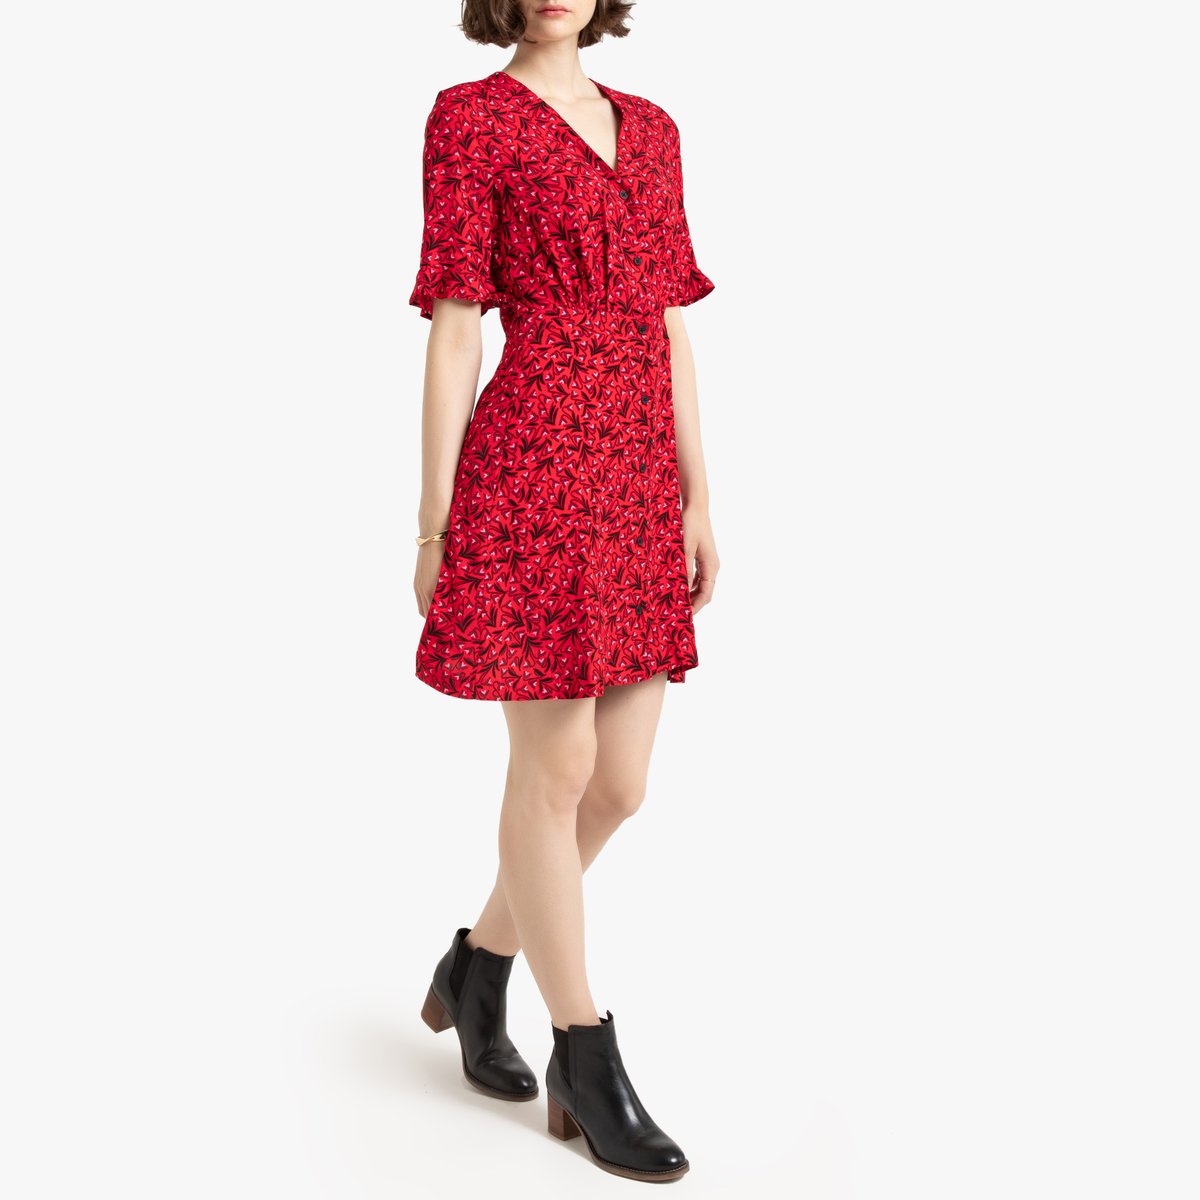 Платье La Redoute Короткое расклешенное с V-образным вырезом и короткими рукавами 34 (FR) - 40 (RUS) красный, размер 34 (FR) - 40 (RUS) Короткое расклешенное с V-образным вырезом и короткими рукавами 34 (FR) - 40 (RUS) красный - фото 2